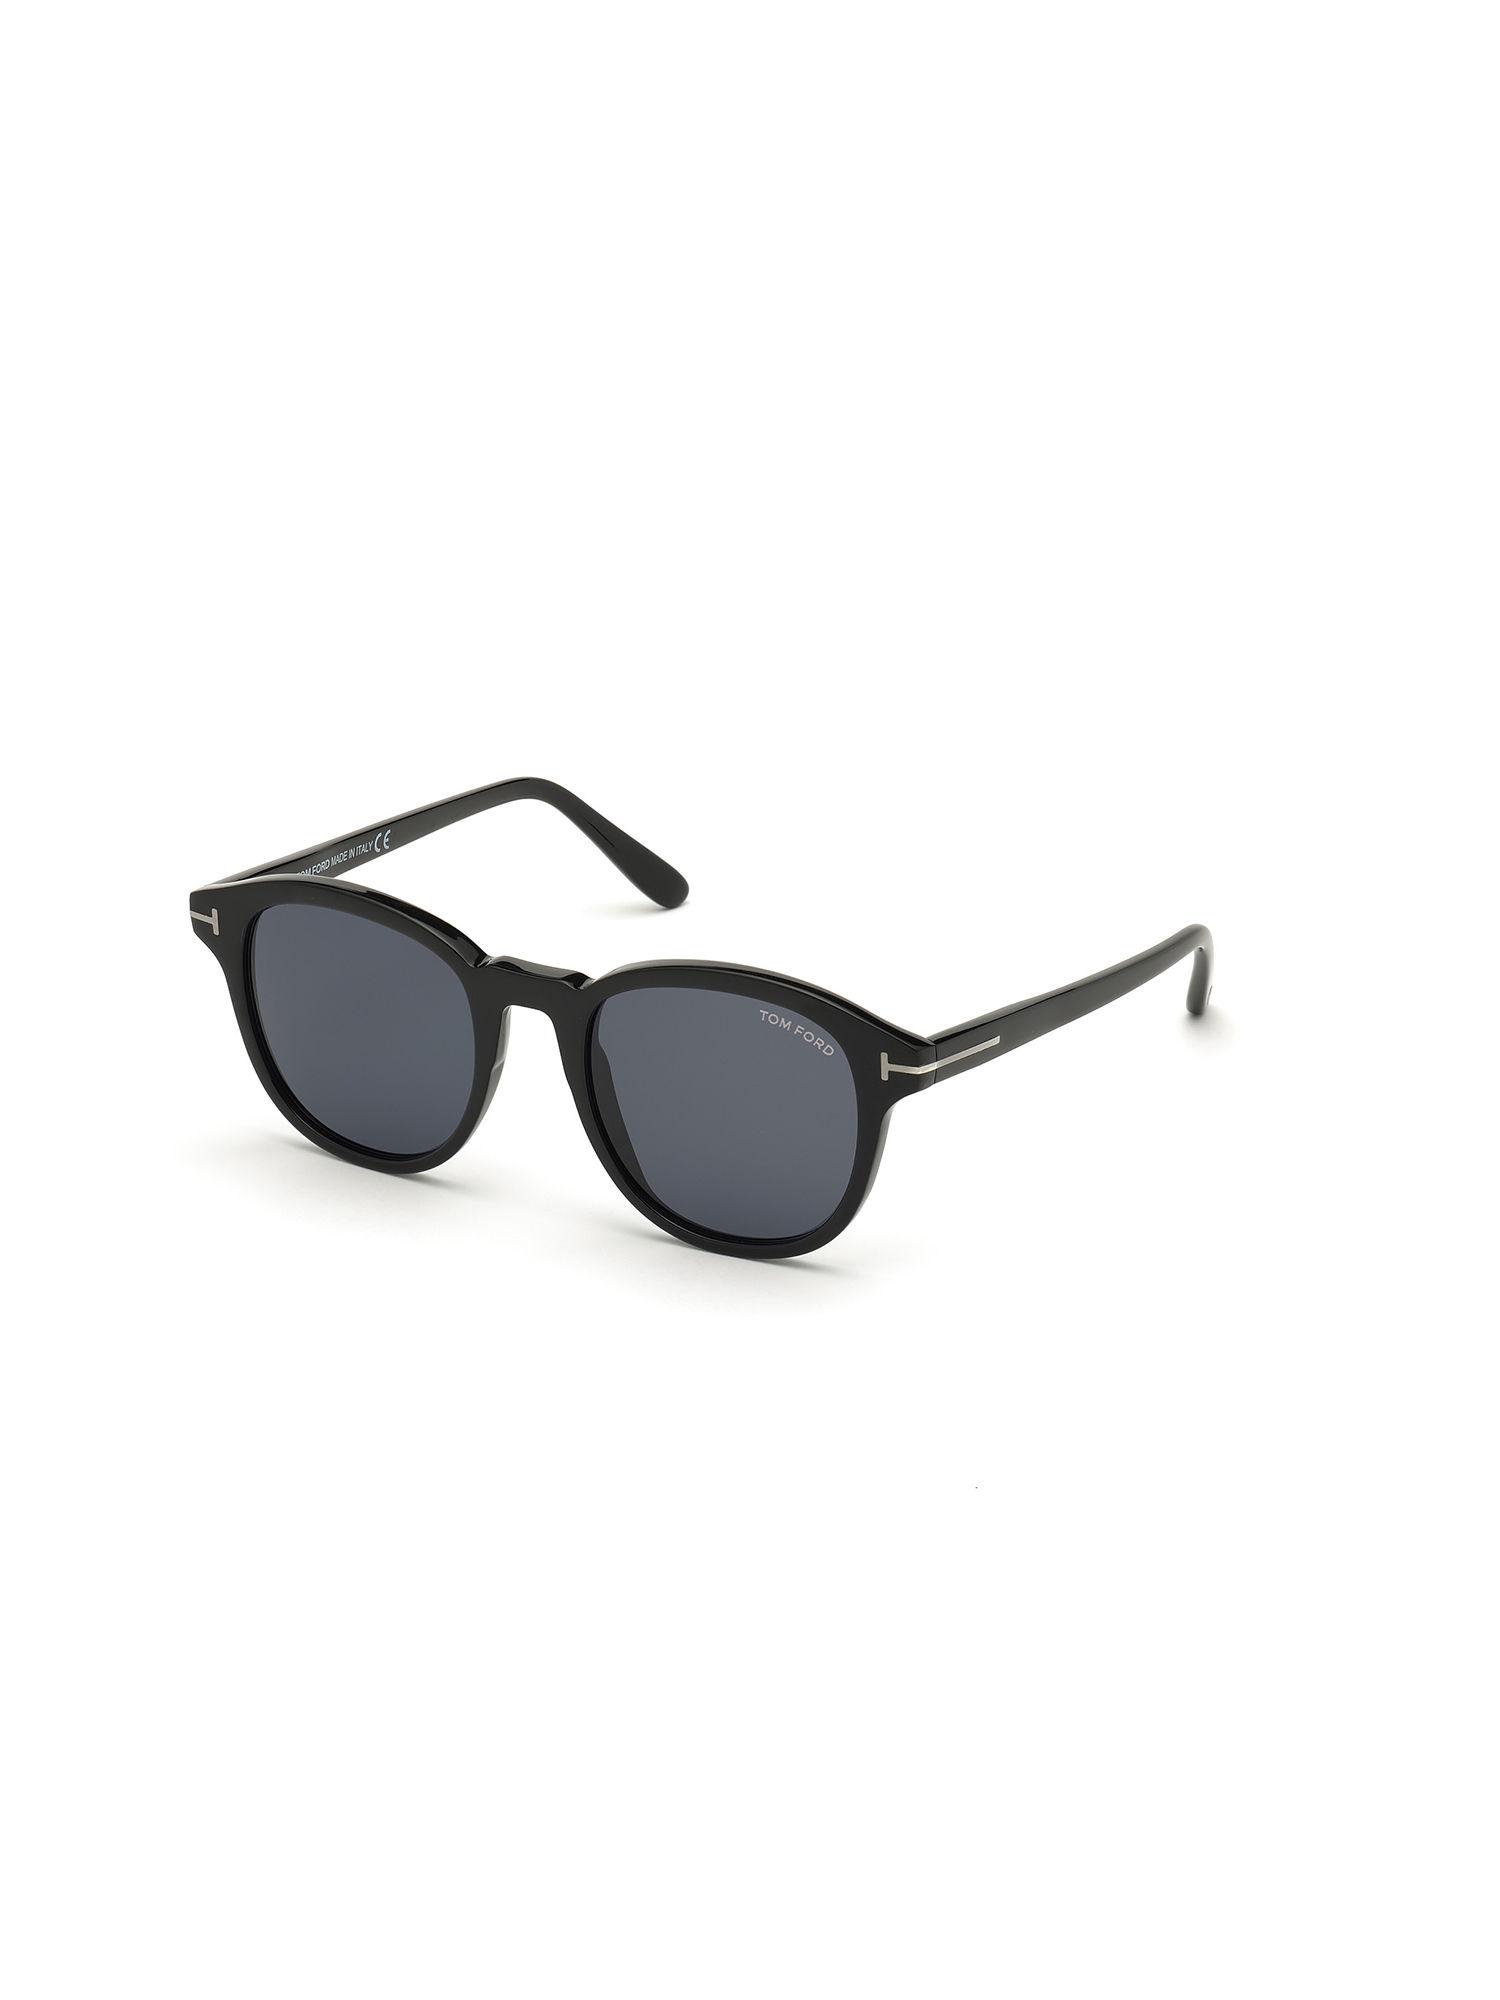 Black Plastic Sunglasses Ft0752-N 50 01A